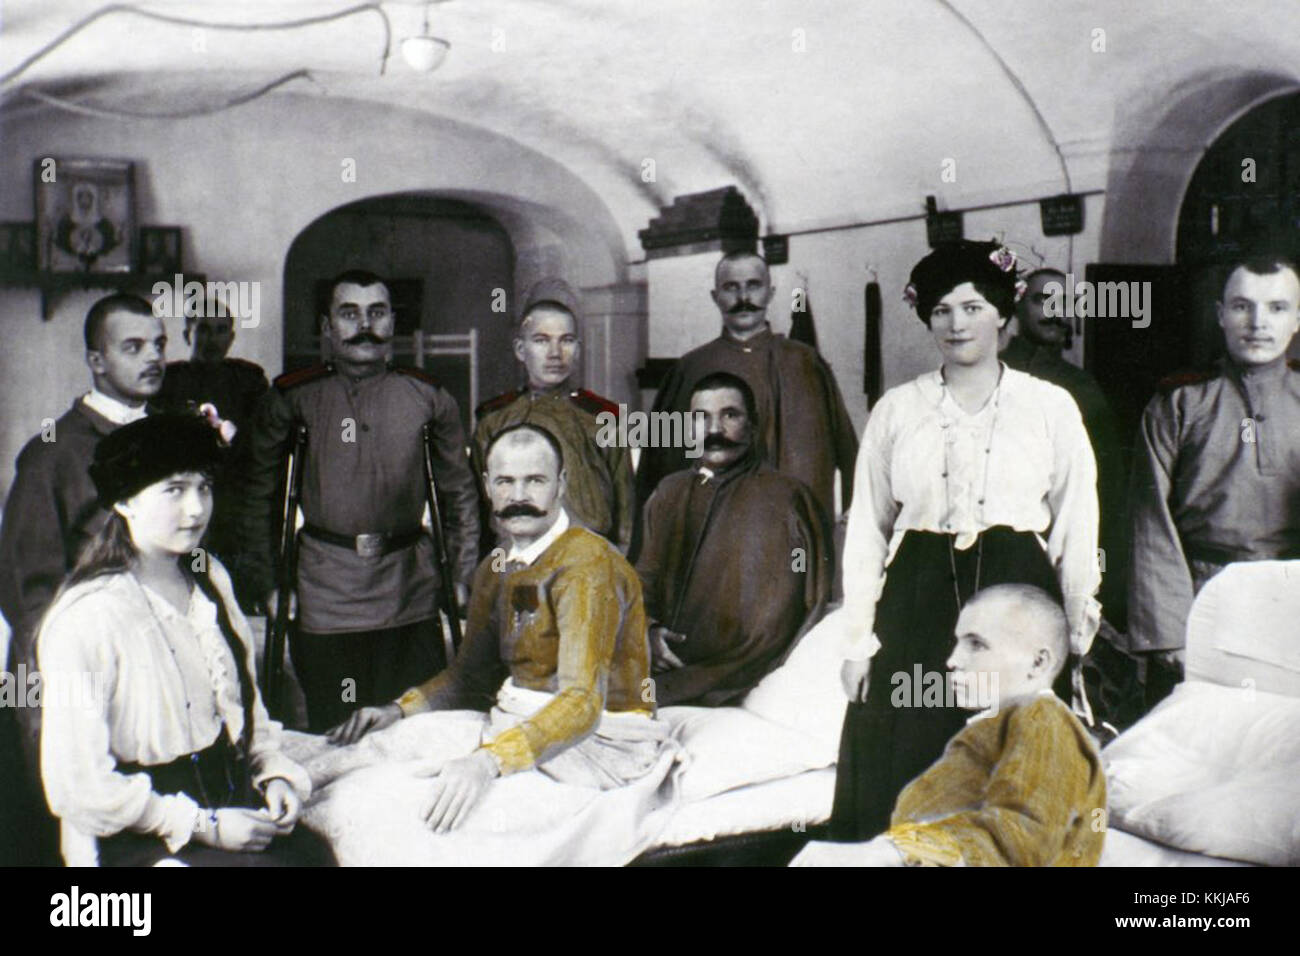 NON DATÉ : les filles du tsar Nicholas II Anastasia (né en 1901) et Maria Romanov (né en 1899) visitent des soldats blessés à l'hôpital pendant la première Guerre mondiale. La série de photos uniques a été prise par le tsar Nicholas II lui-même ou par des personnes proches de la famille royale. Ils ont été réalisés en 1915-1916, les années les plus terribles de la première Guerre mondiale. Nicholas II était un photographe insatiable. Il a pris soin de photos, les a classées avec soin dans de nombreux albums. Il a transmis son amour pour la photographie à Maria, sa troisième fille, qui est responsable de la coloration de la plupart des photos. (Photo: Laski Diffus Banque D'Images